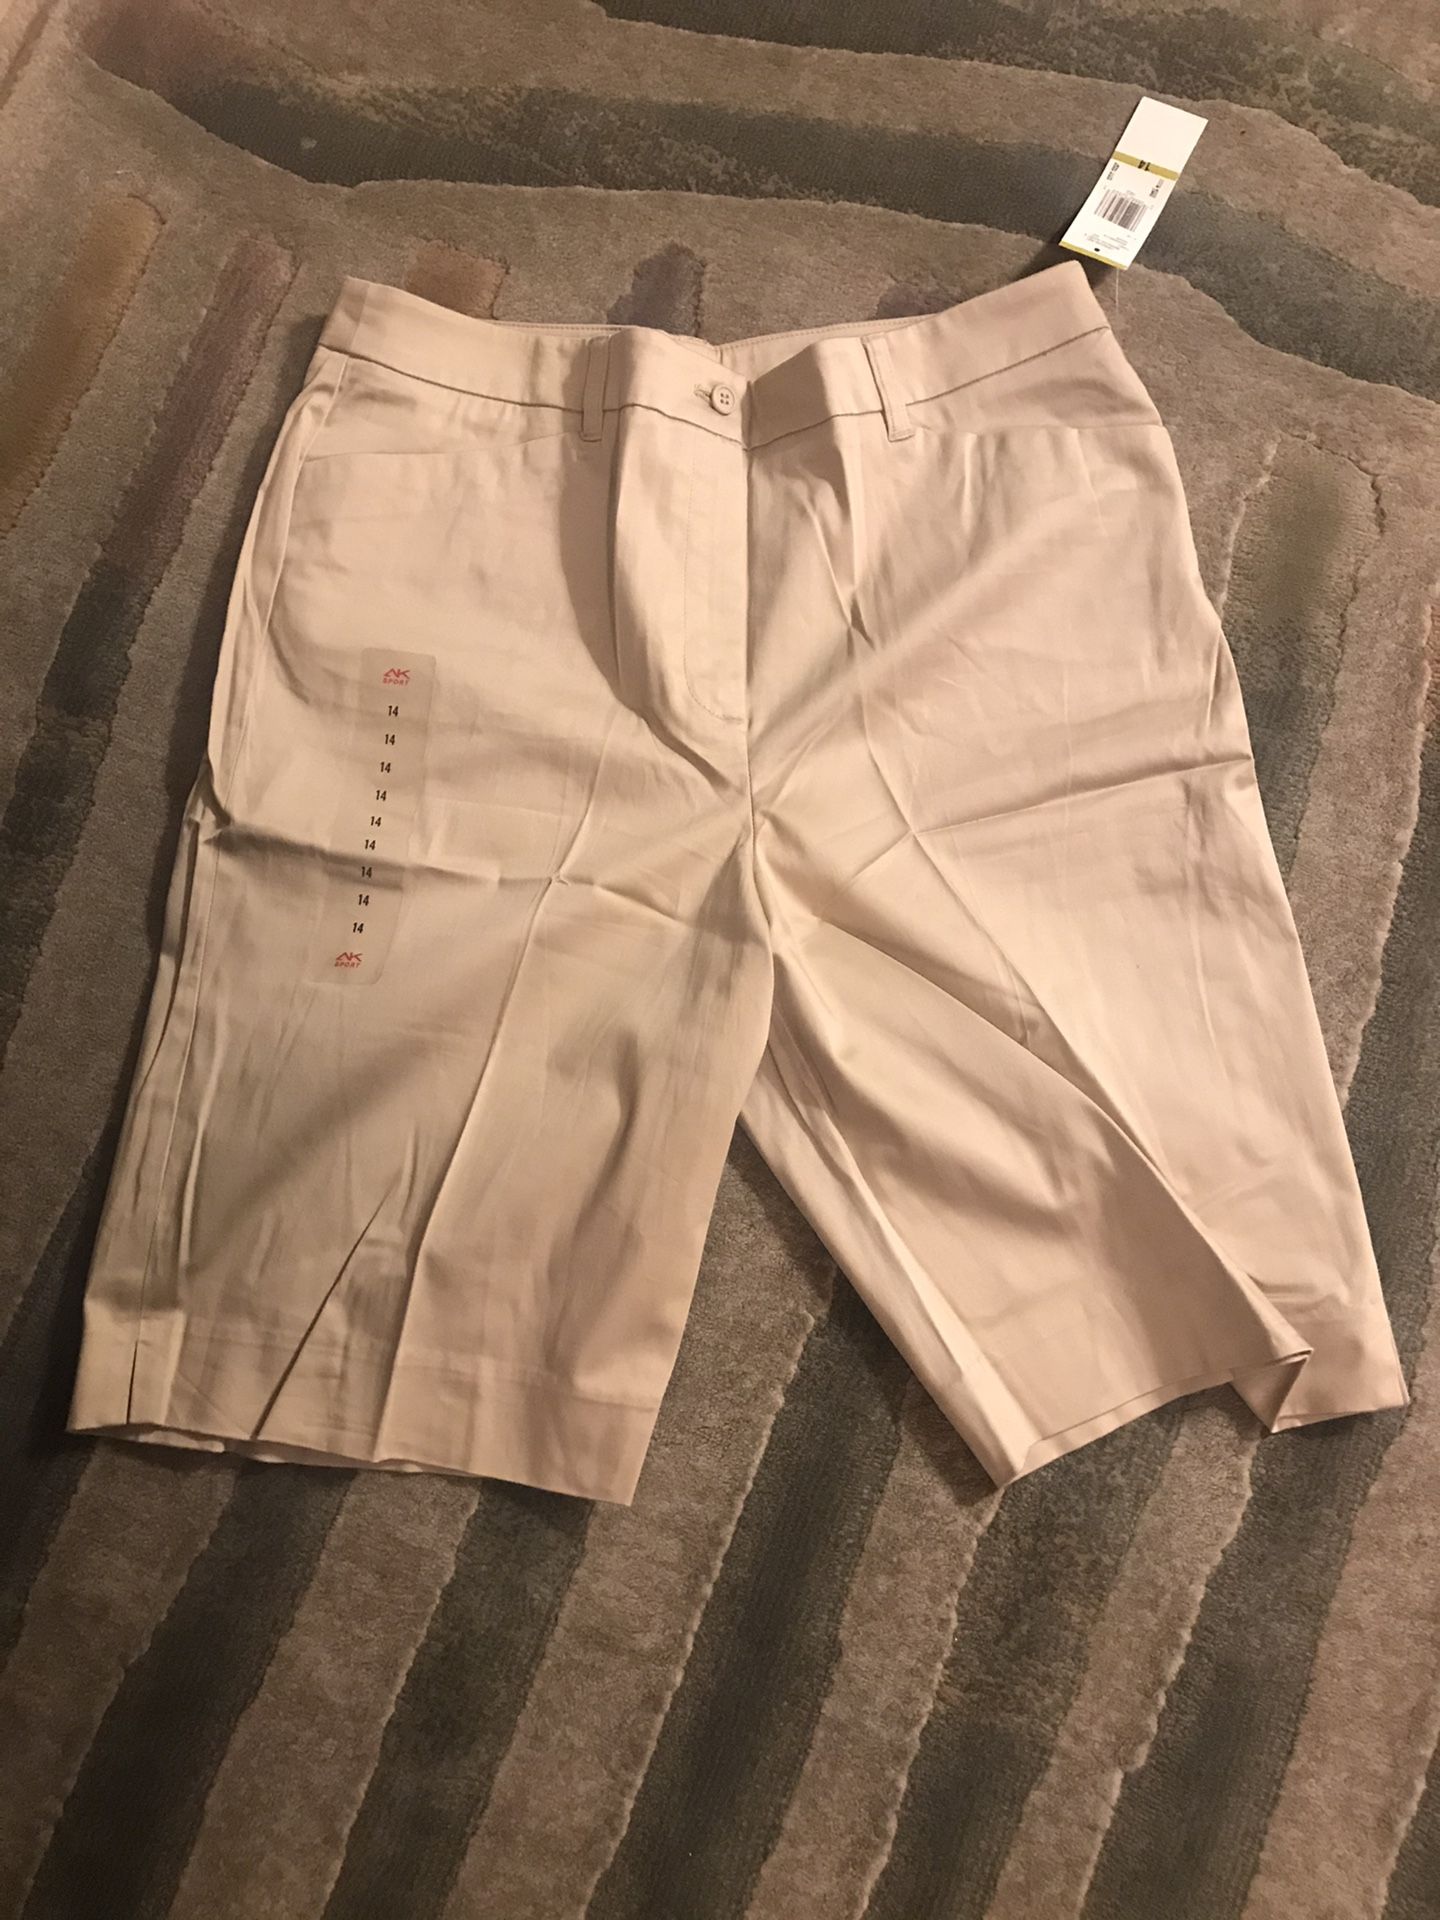 Anne Klein Sport Bermuda Shorts - Size 16